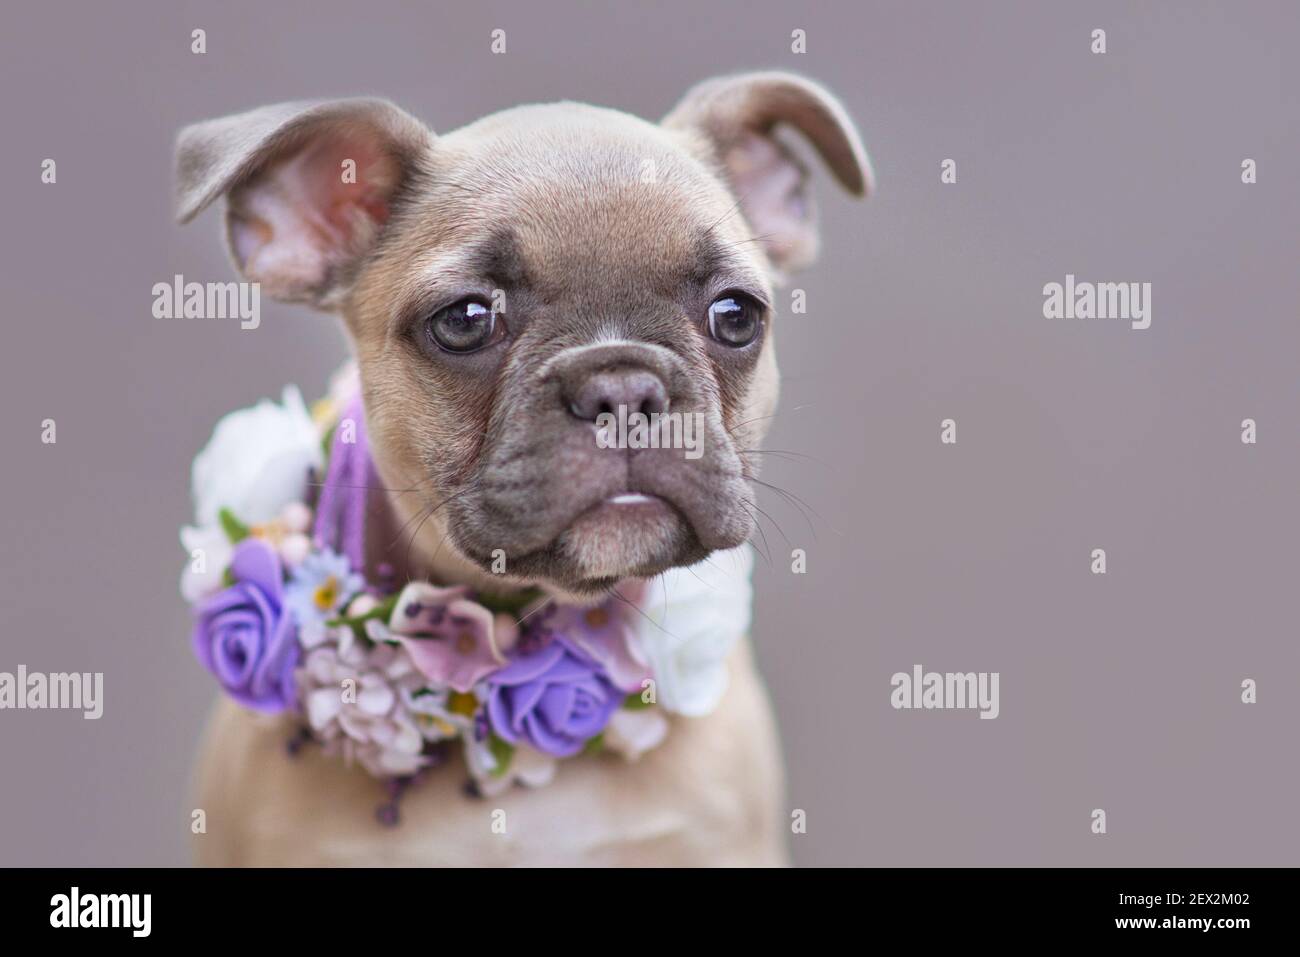 Ritratto del giovane cucciolo francese del cane Bulldog con orecchie floppy indossando un collare di fiori viola davanti alla parete grigia Foto Stock